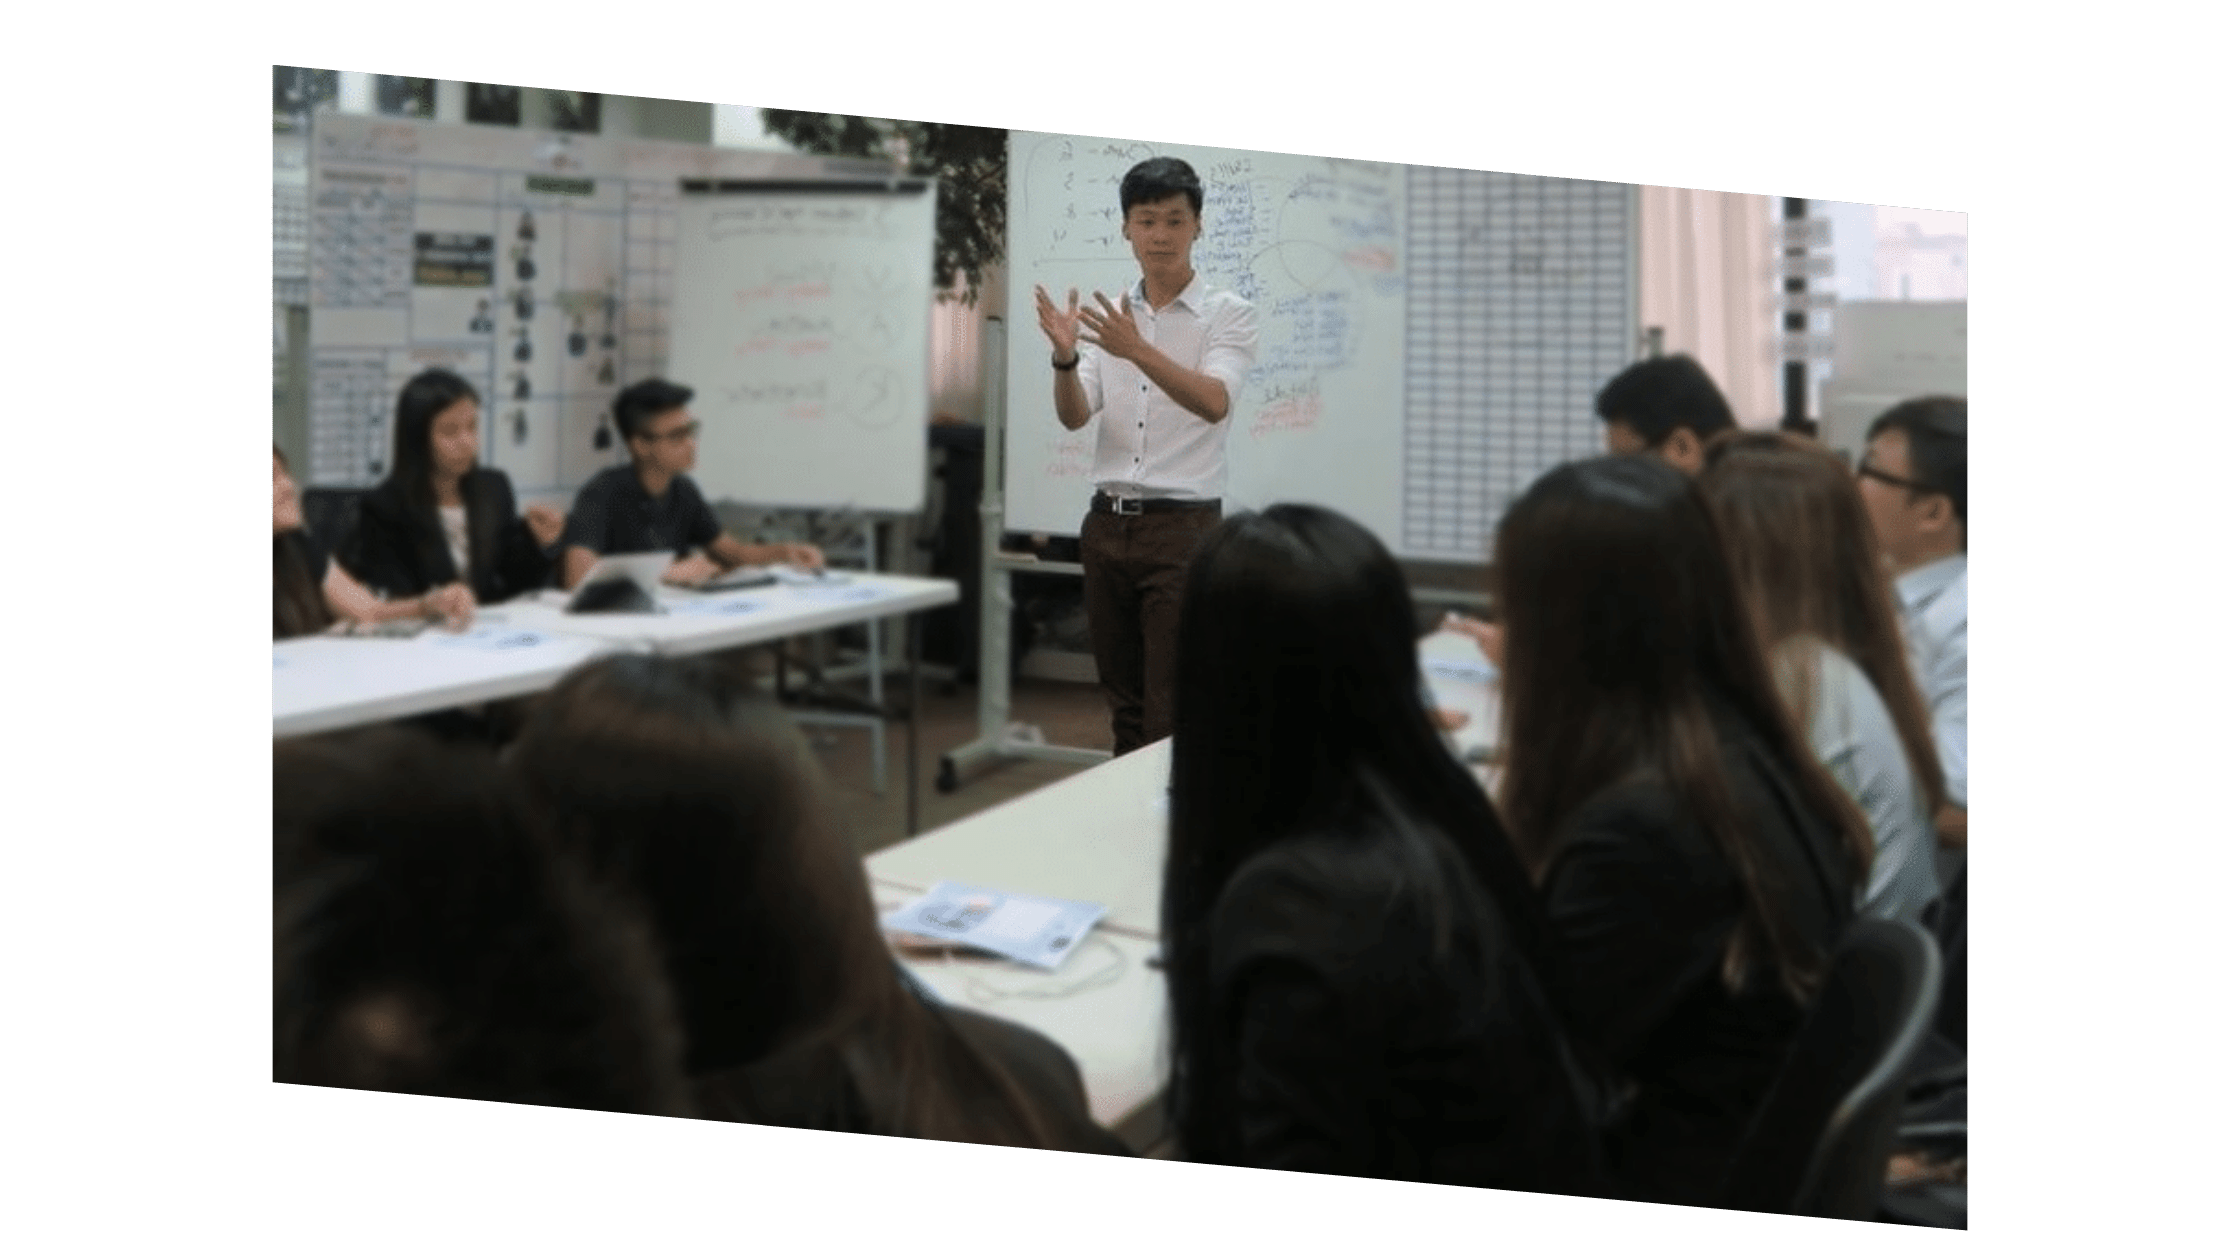 seo expert conducting class